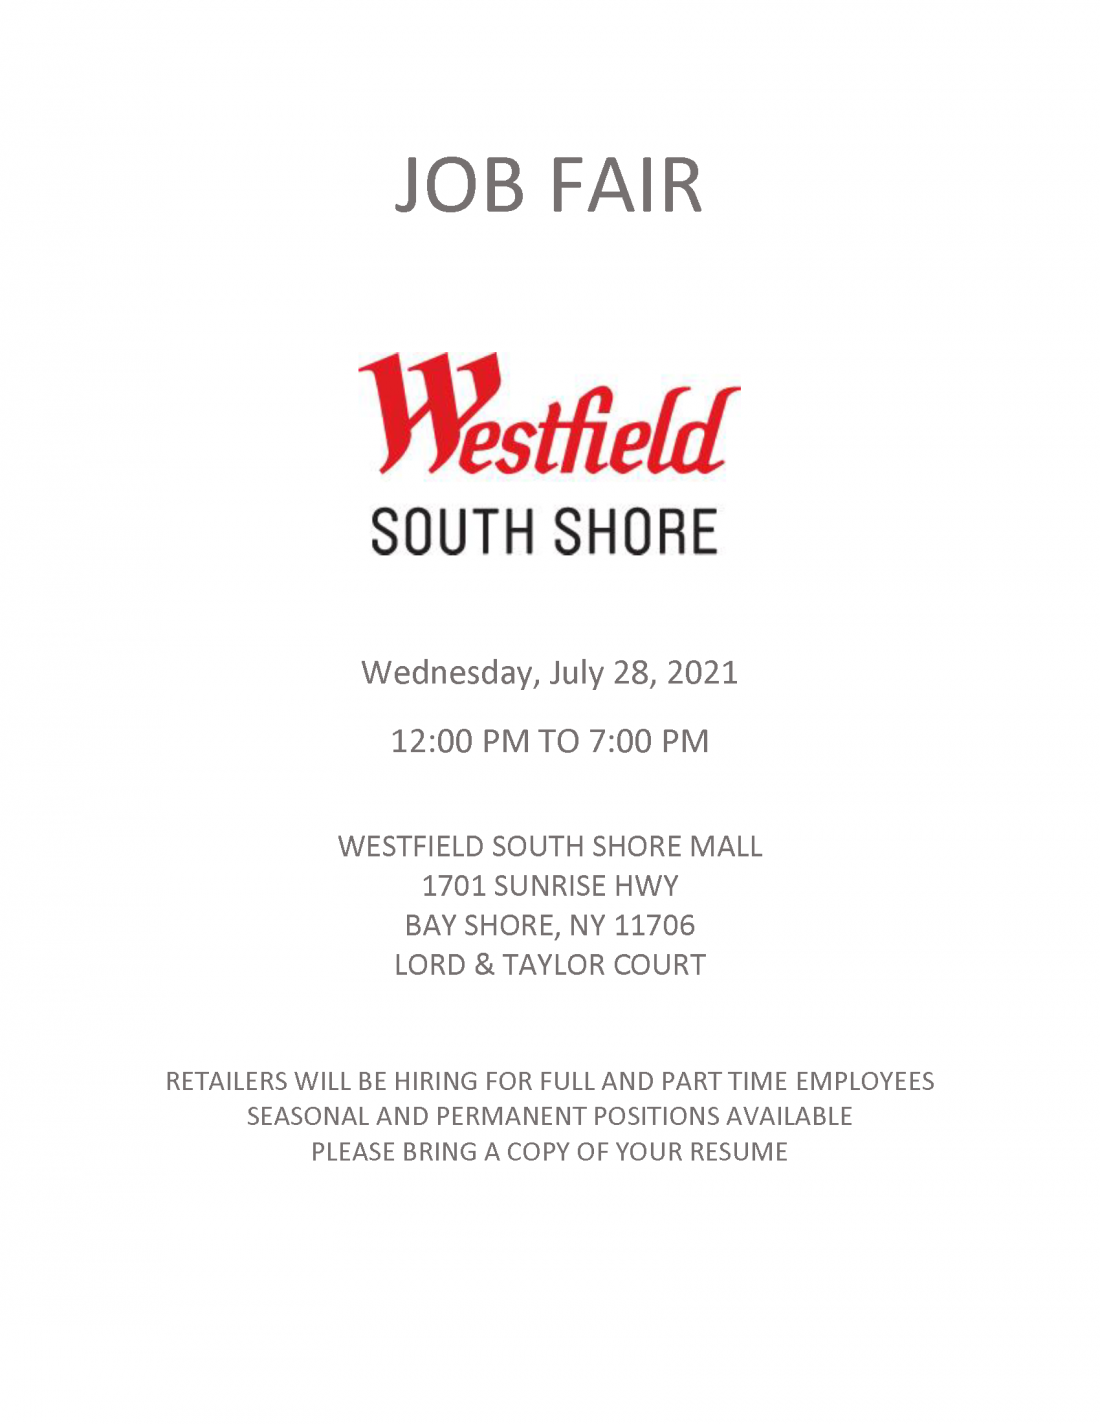 westfield job fair